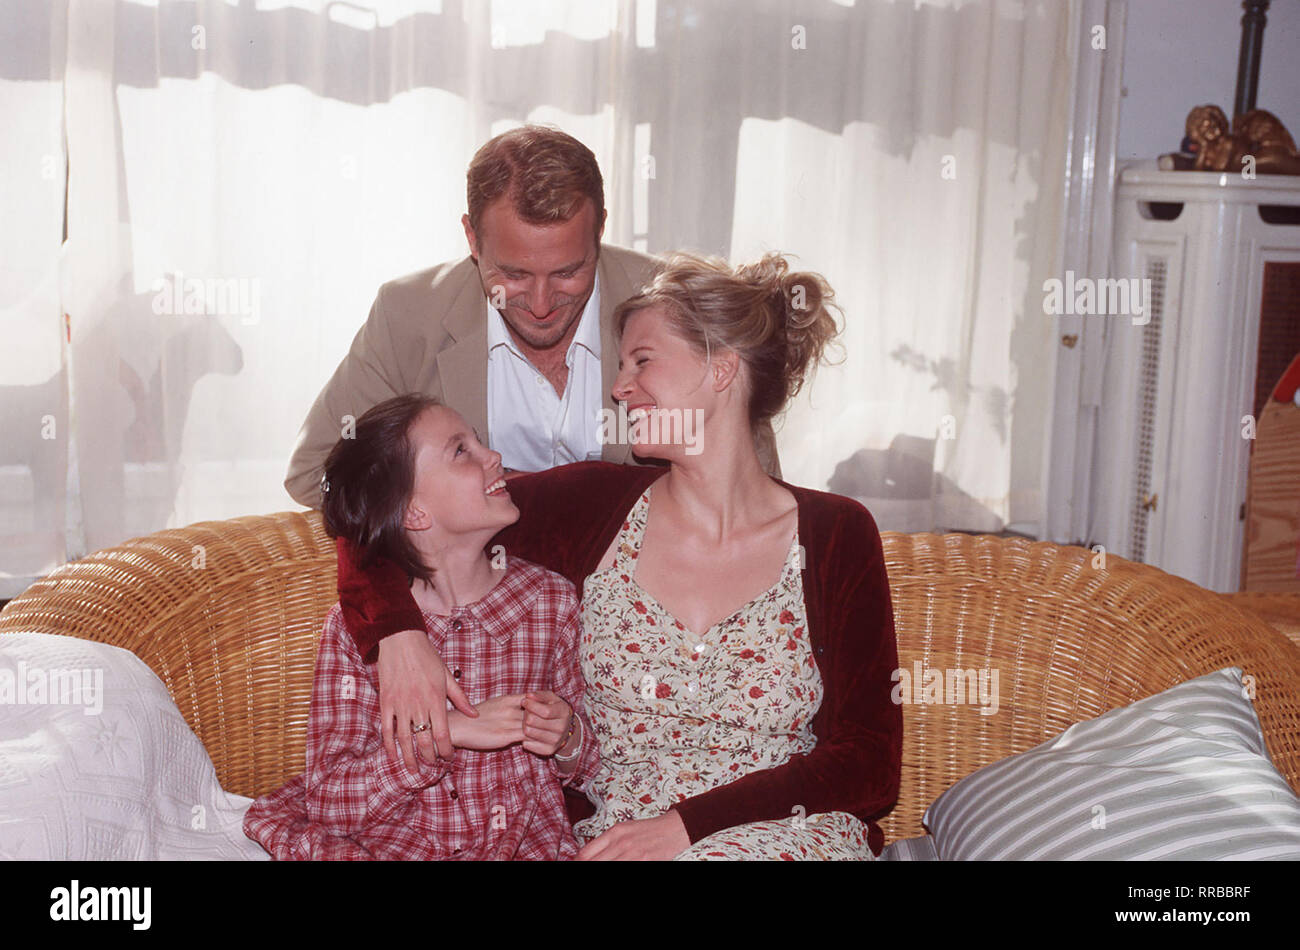 Robert Breuer (HEINO FERCH) und Judith (INA WEISSE) mit iher Tochter Carla (JOHANNA C.NEUHOLD). Regie: Uwe Janson / Überschrift: SINGLE SUCHT NACHWUCHS / BRD 1997 Stock Photo